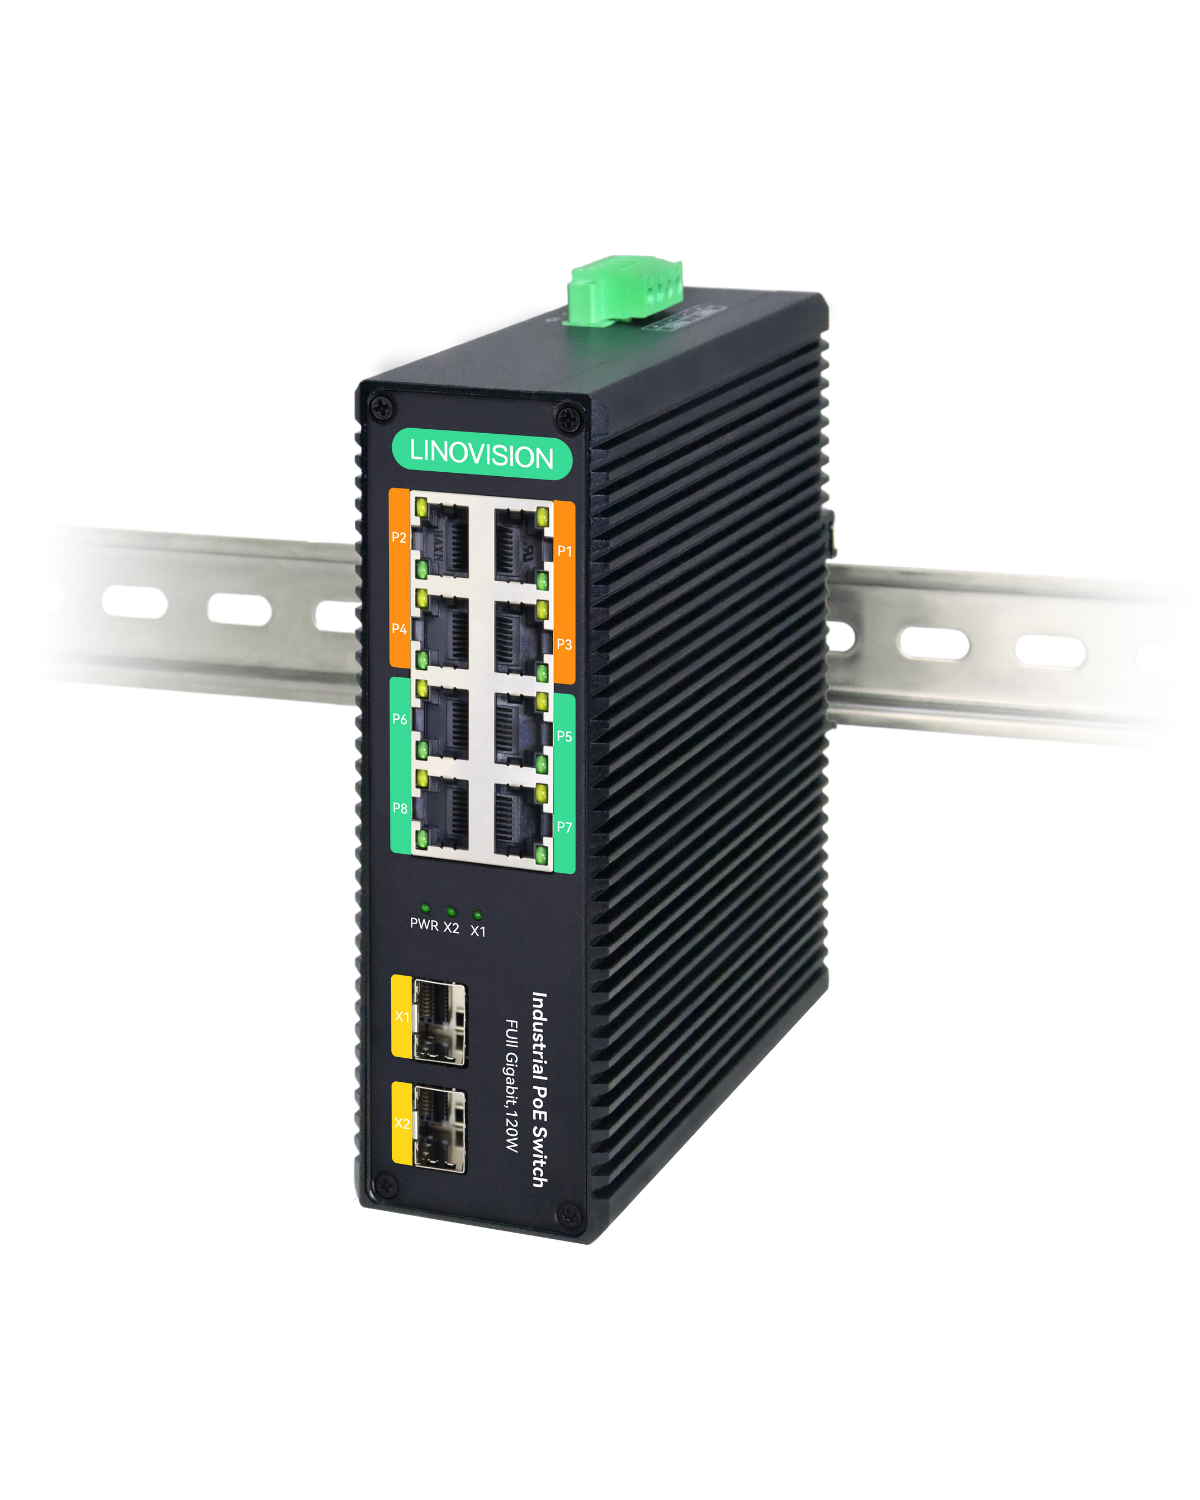 Industrieller 8 Ports Voll Gigabit BT 90W PoE Switch mit 2 SFP Uplink